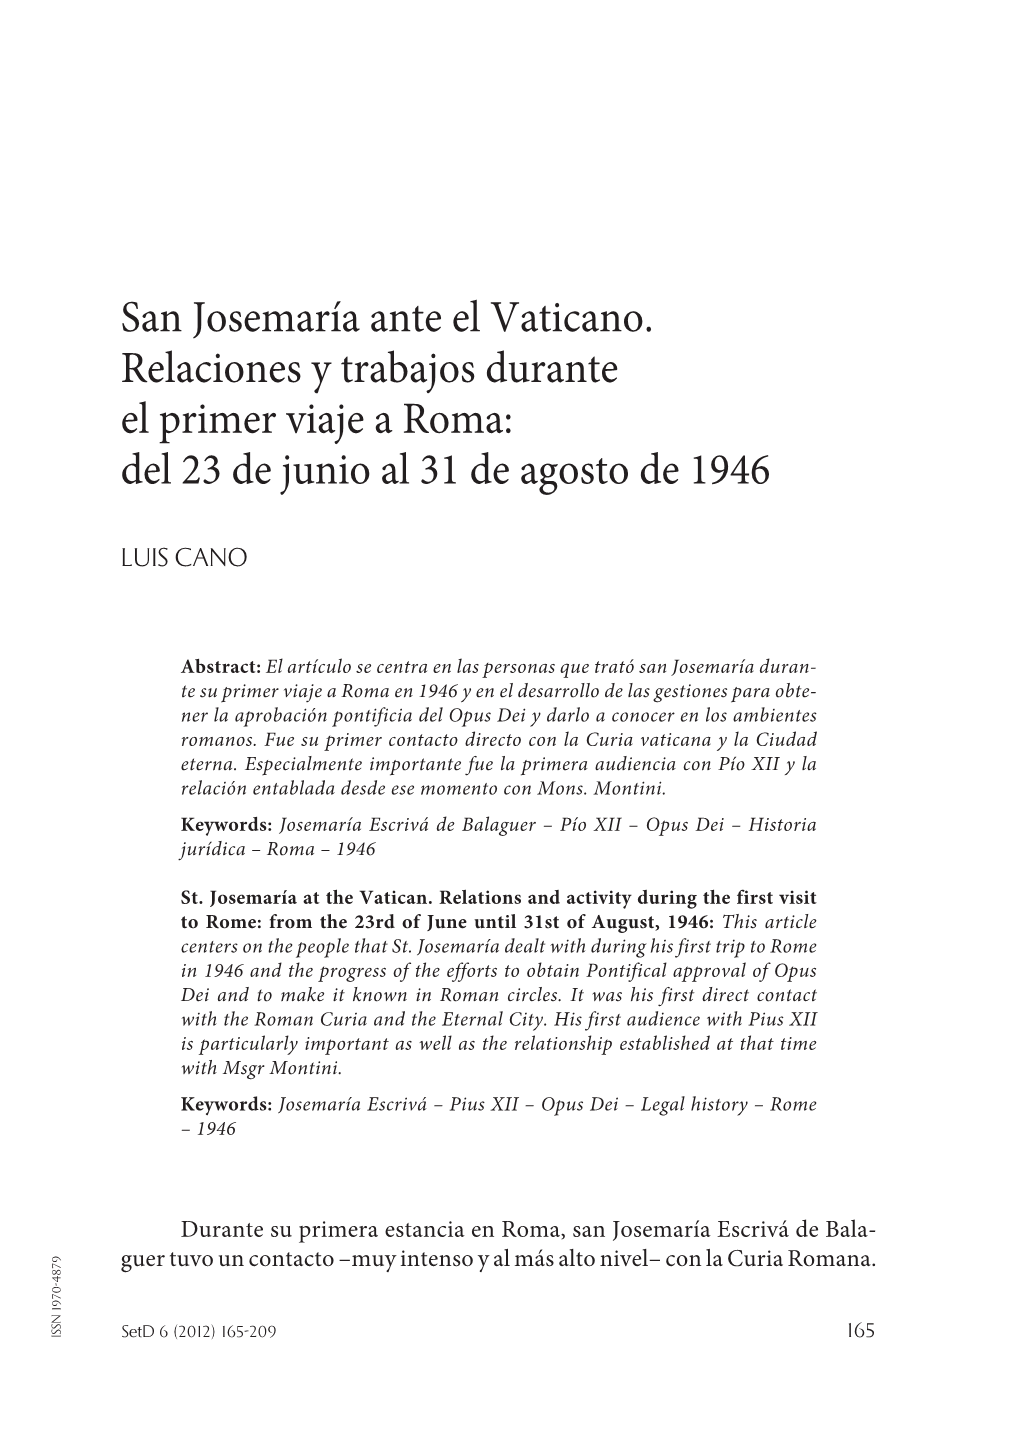 San Josemaría Ante El Vaticano. Encuentros Y Trabajos Durante El